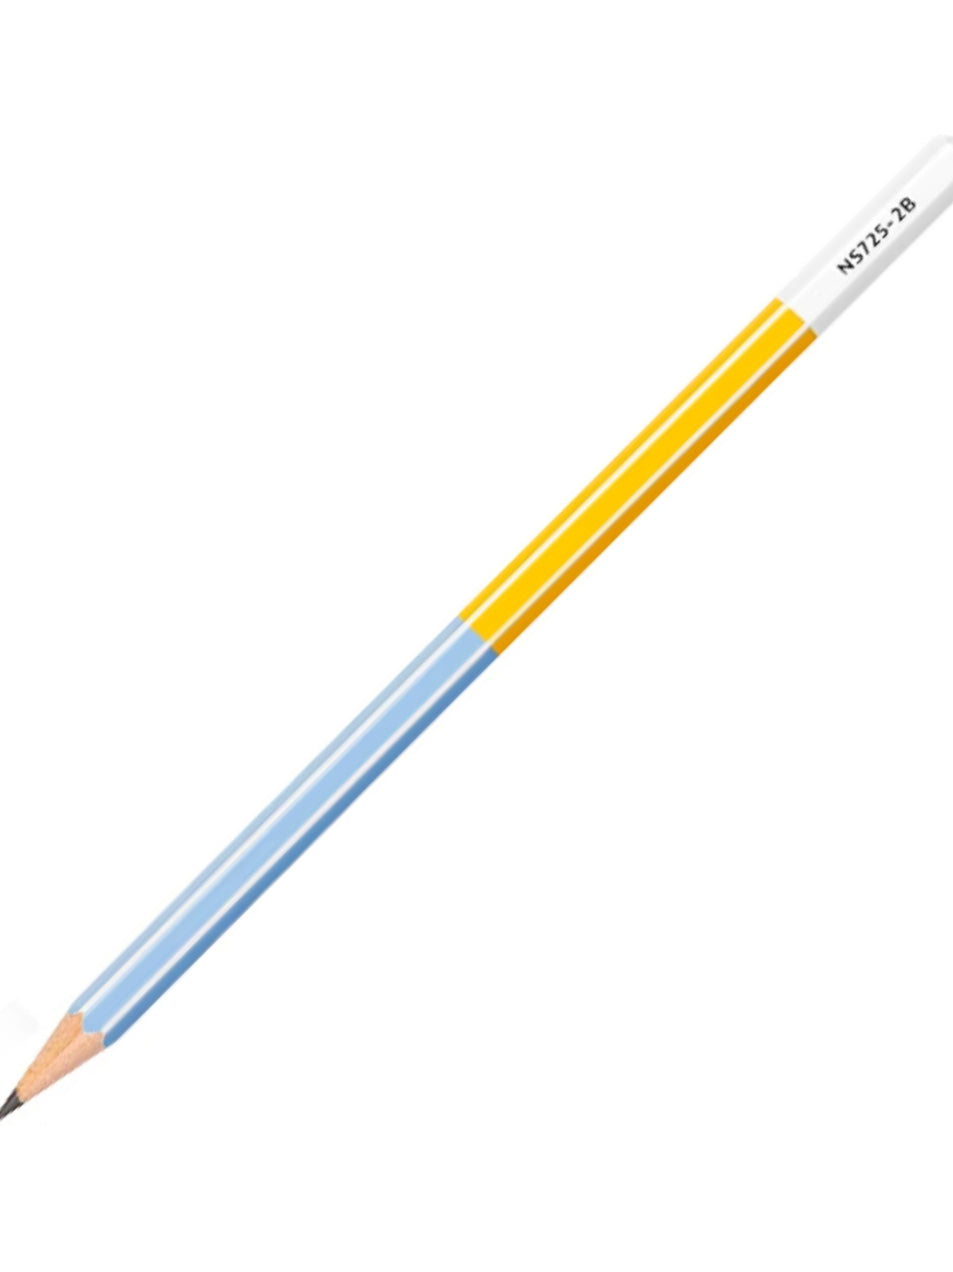 Nusign Deli 2B Pencil